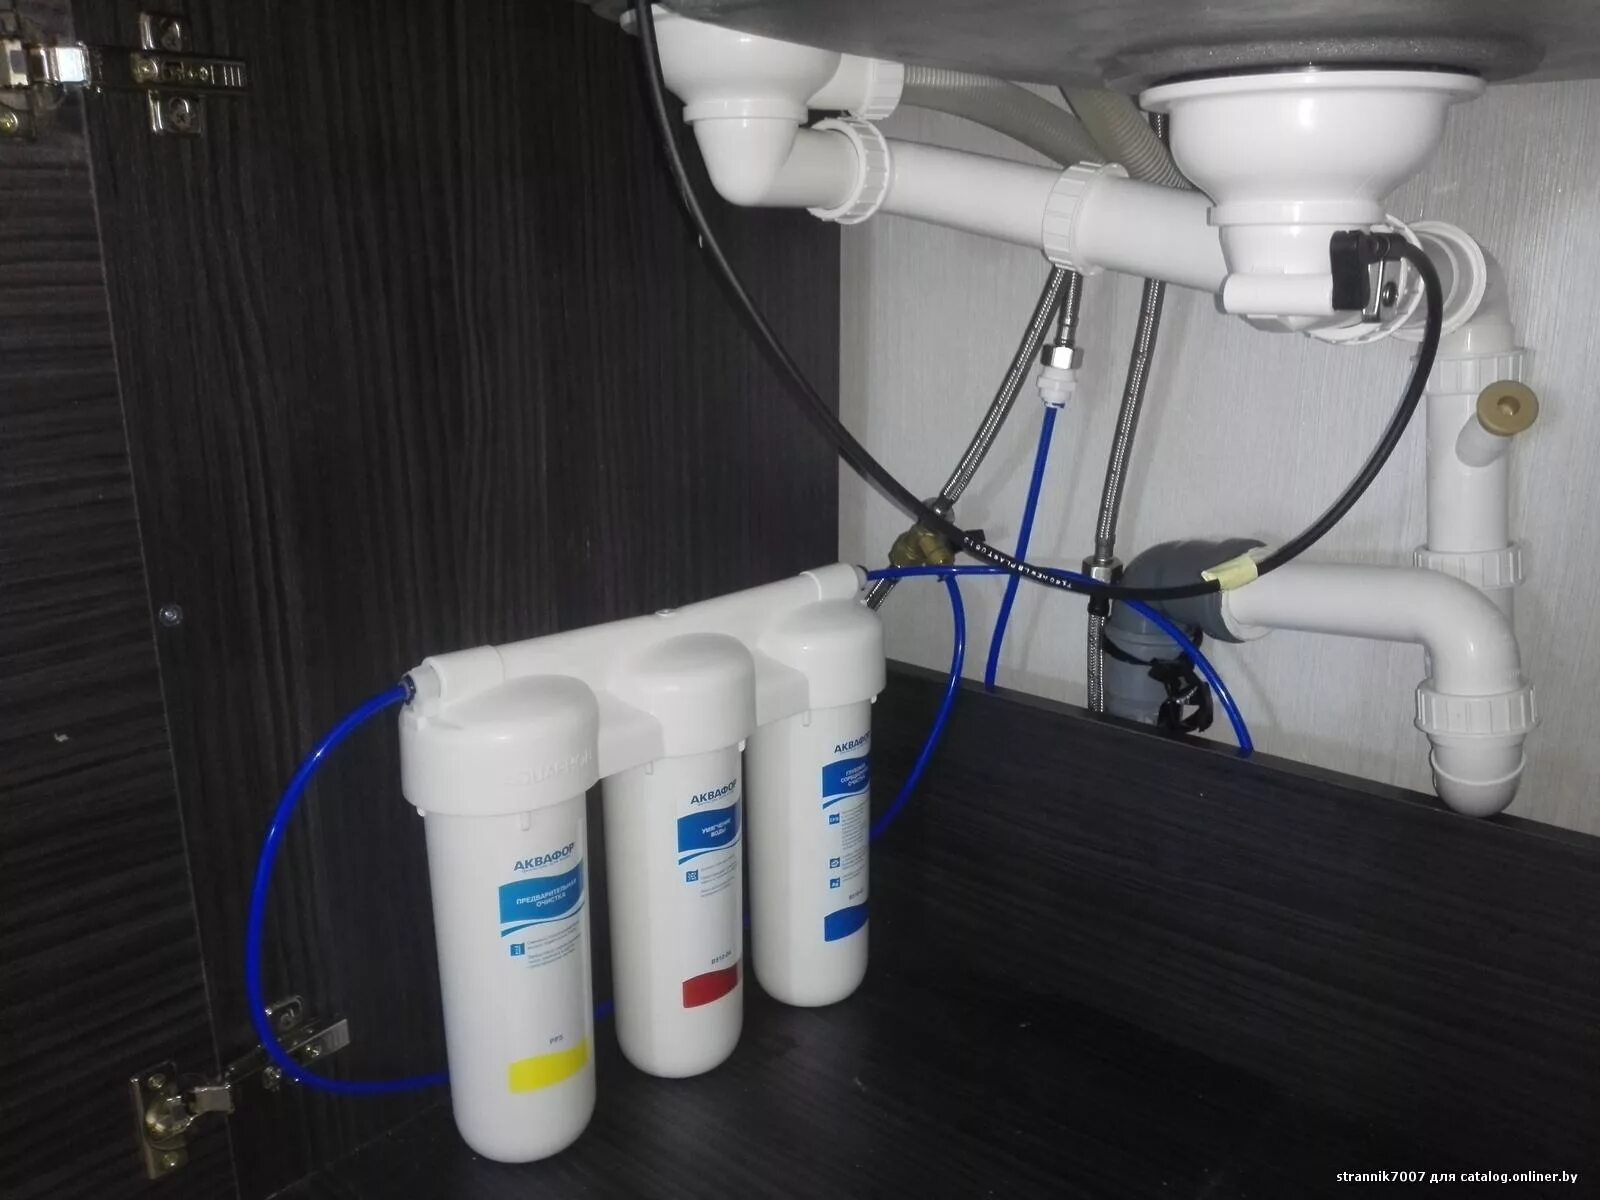 Как установить фильтр для воды аквафор